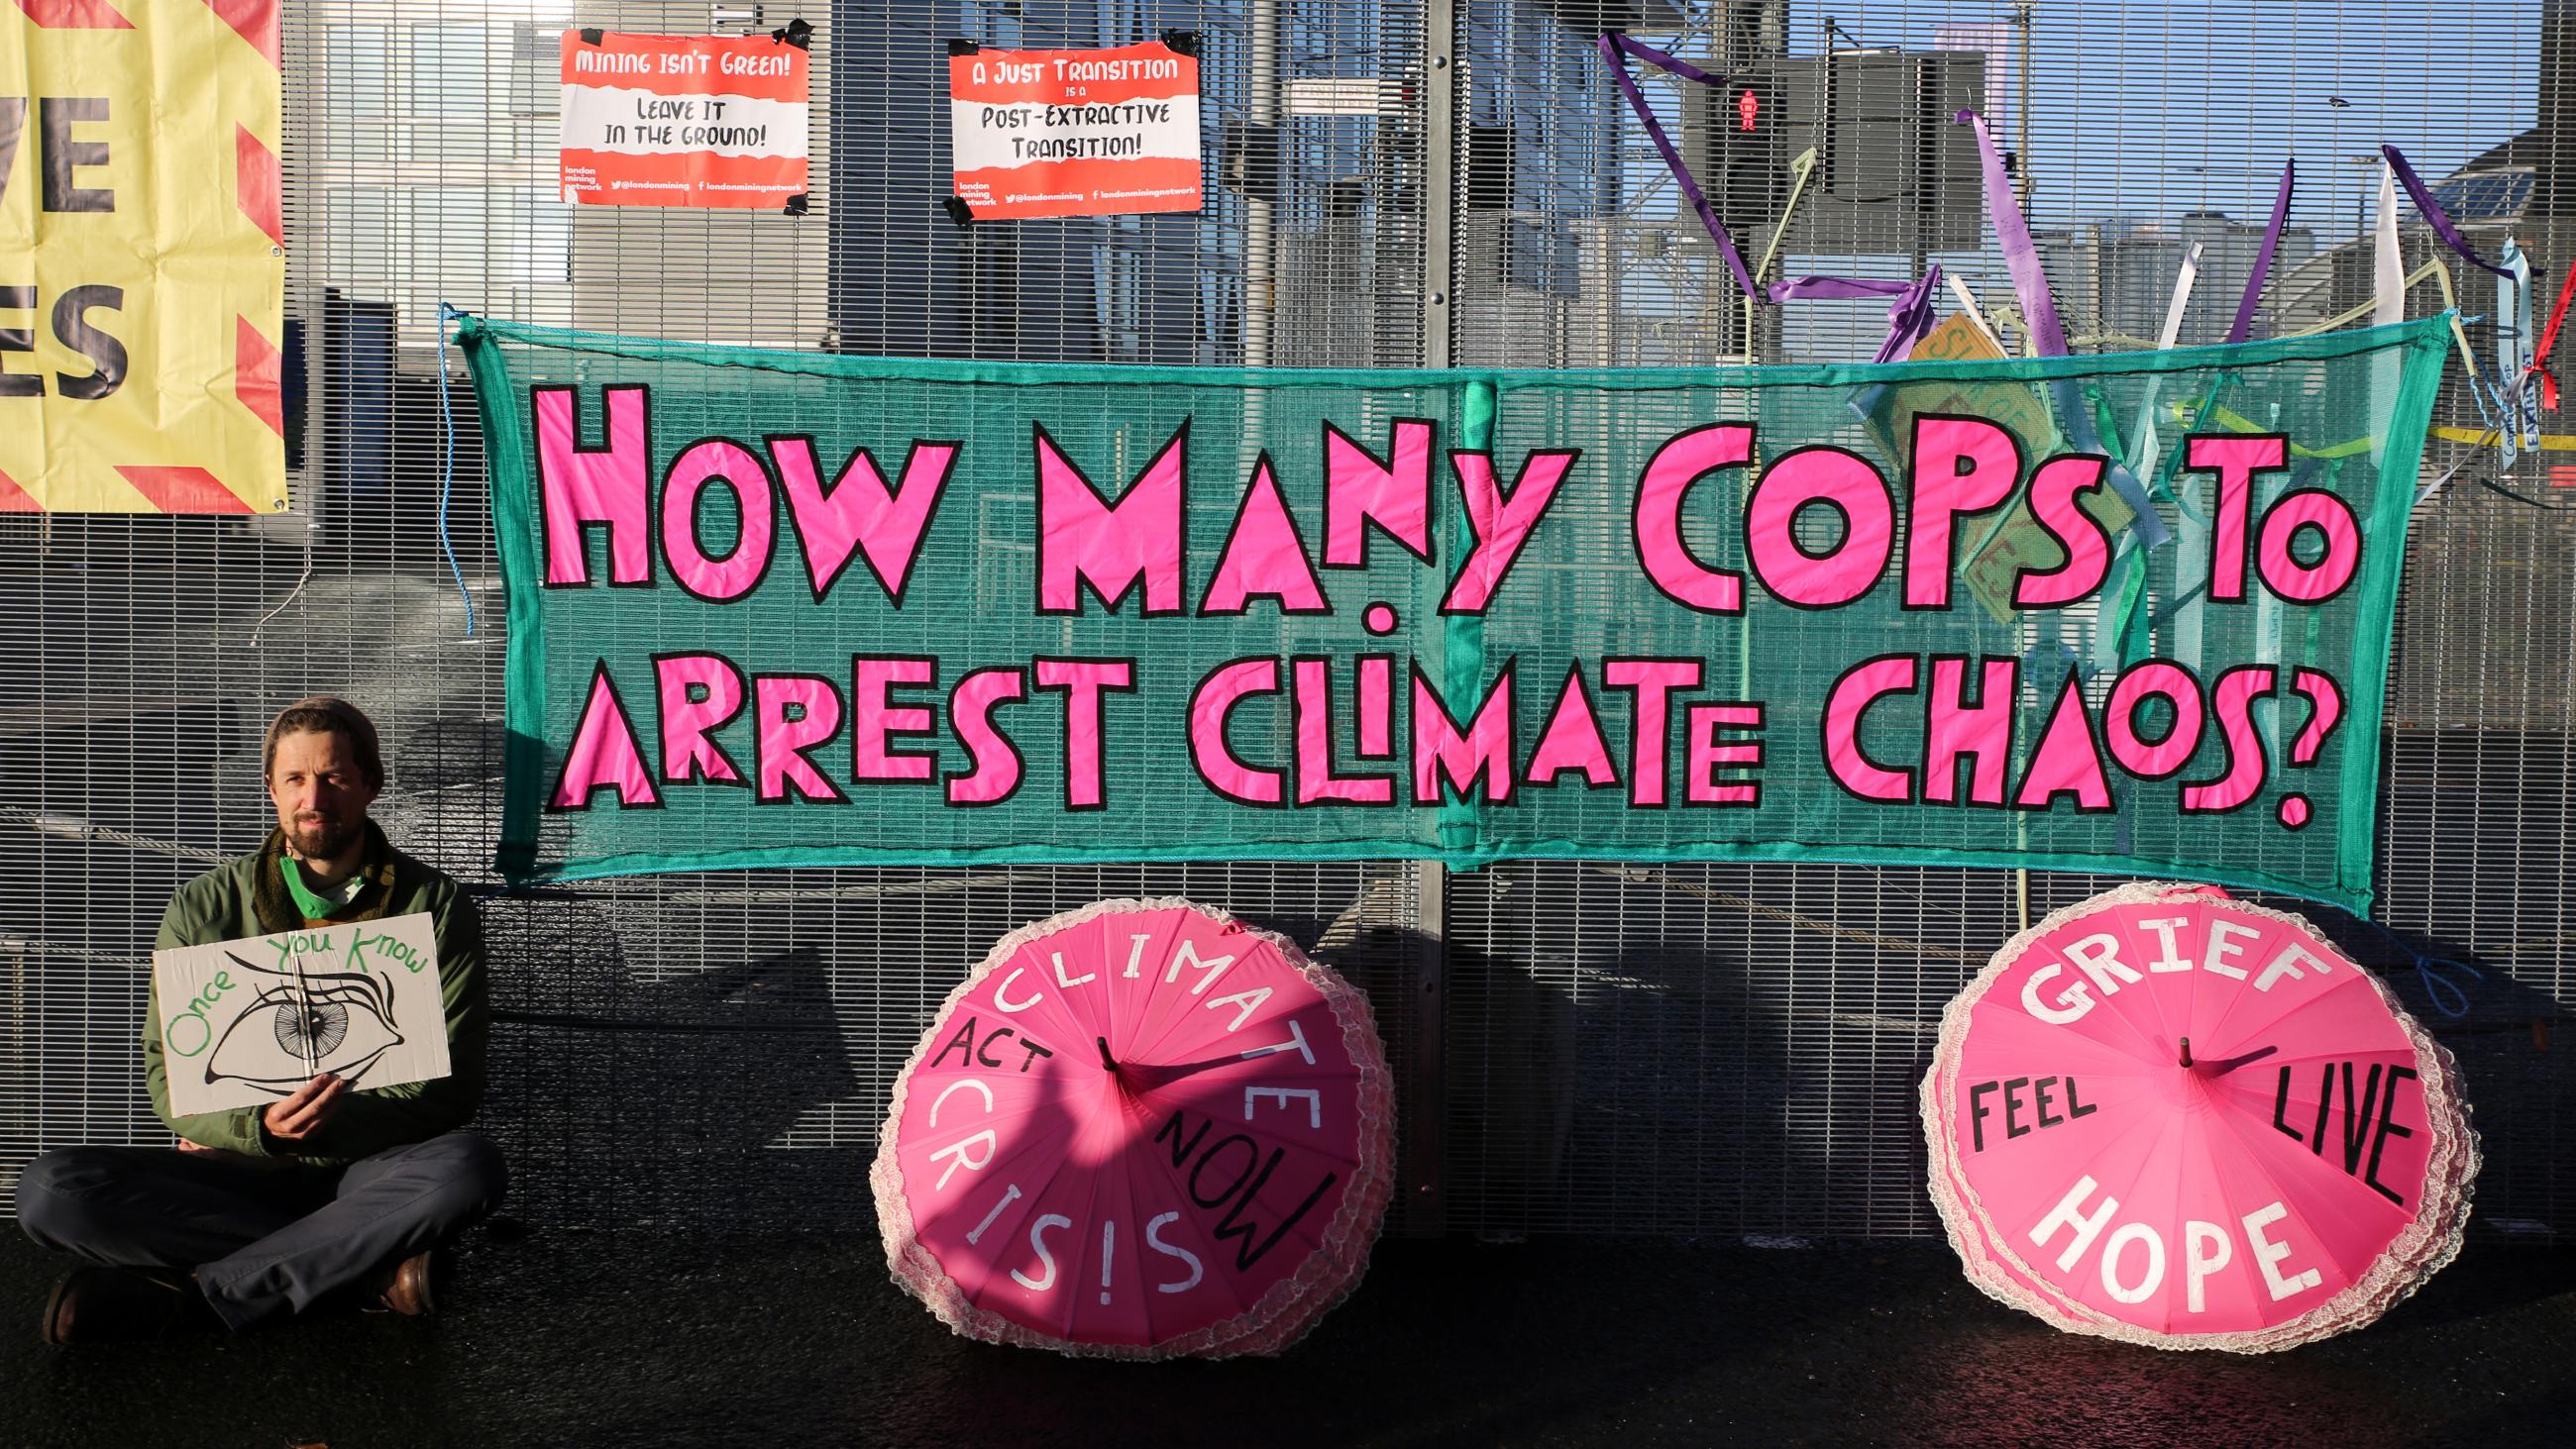 Arrest climate chaos